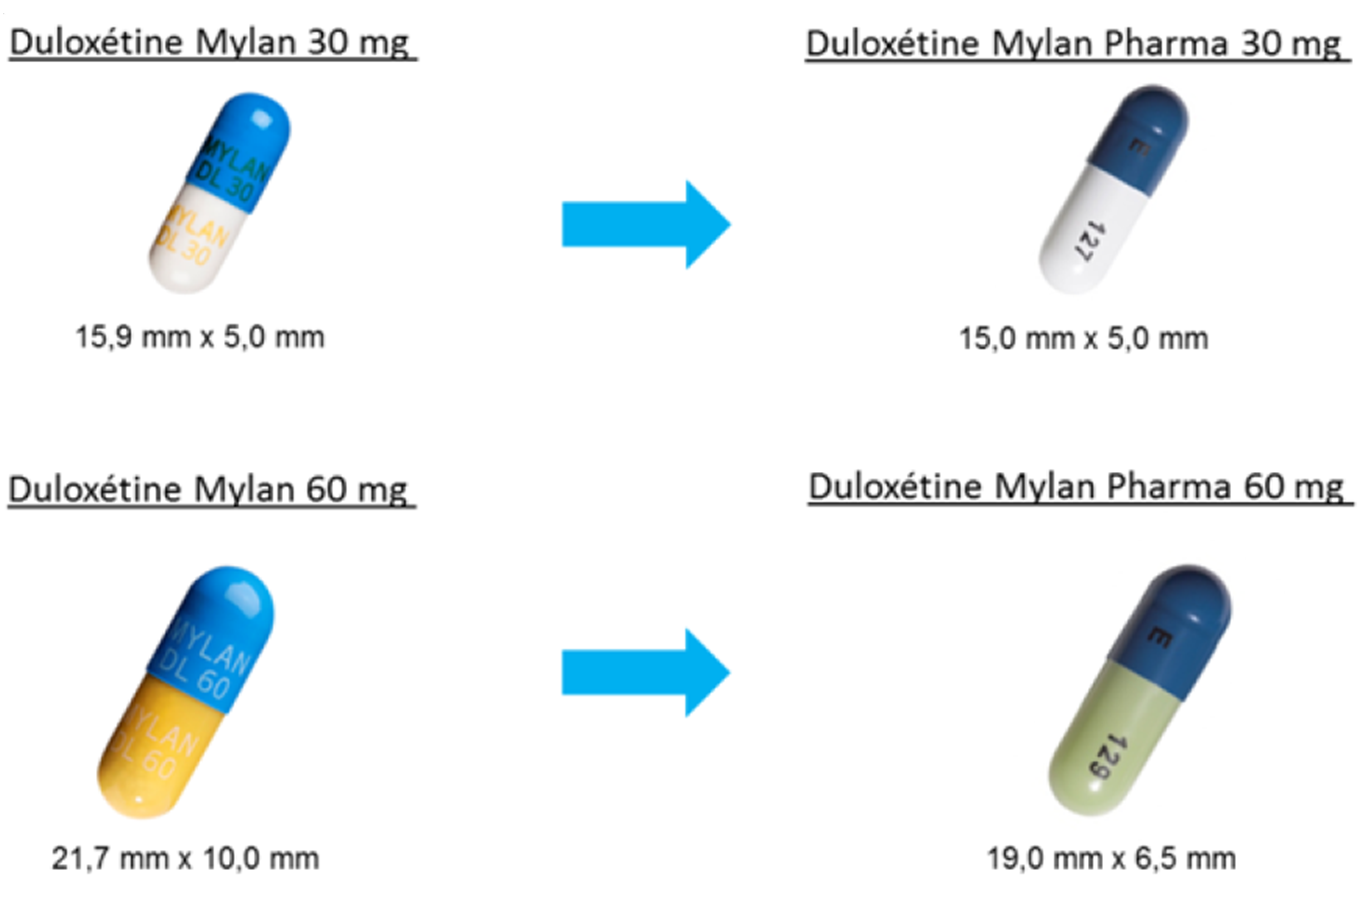 Nouvelles gélules de DULOXETINE MYLAN PHARMA (illustration extraite de la lettre d'information envoyée aux professionnels de santé). width=